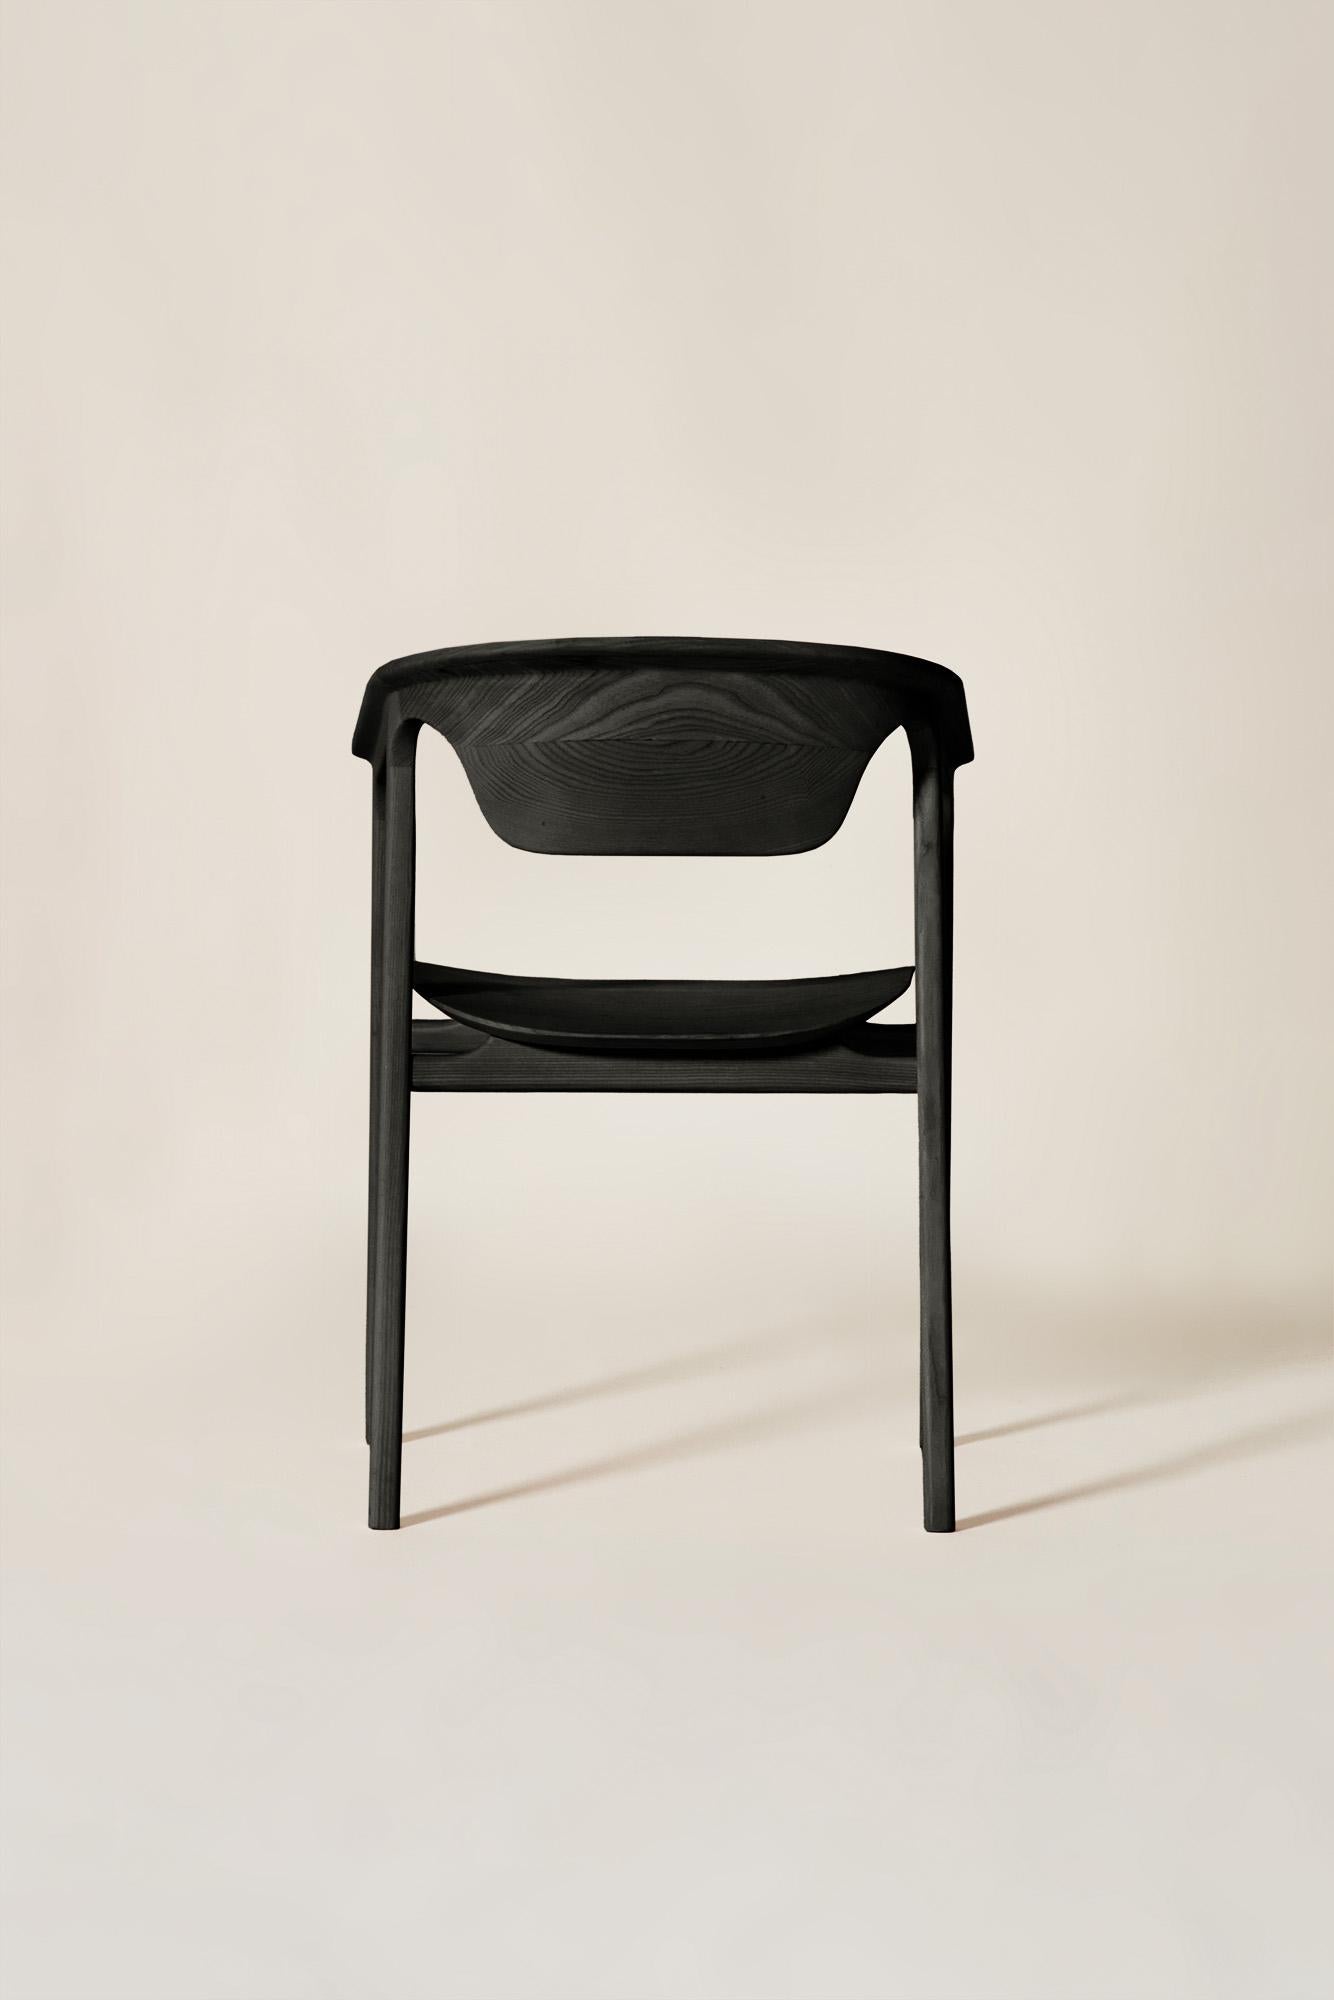 Duna aus der Kollektion 2023 zeitgenössischer Möbel ist die perfekte Balance zwischen weichen und linearen Formen. Sein Design ist das Ergebnis einer sorgfältigen formalen Studie mit dem Ziel, ein ätherisches Spiel von Körpern und Leerräumen zu